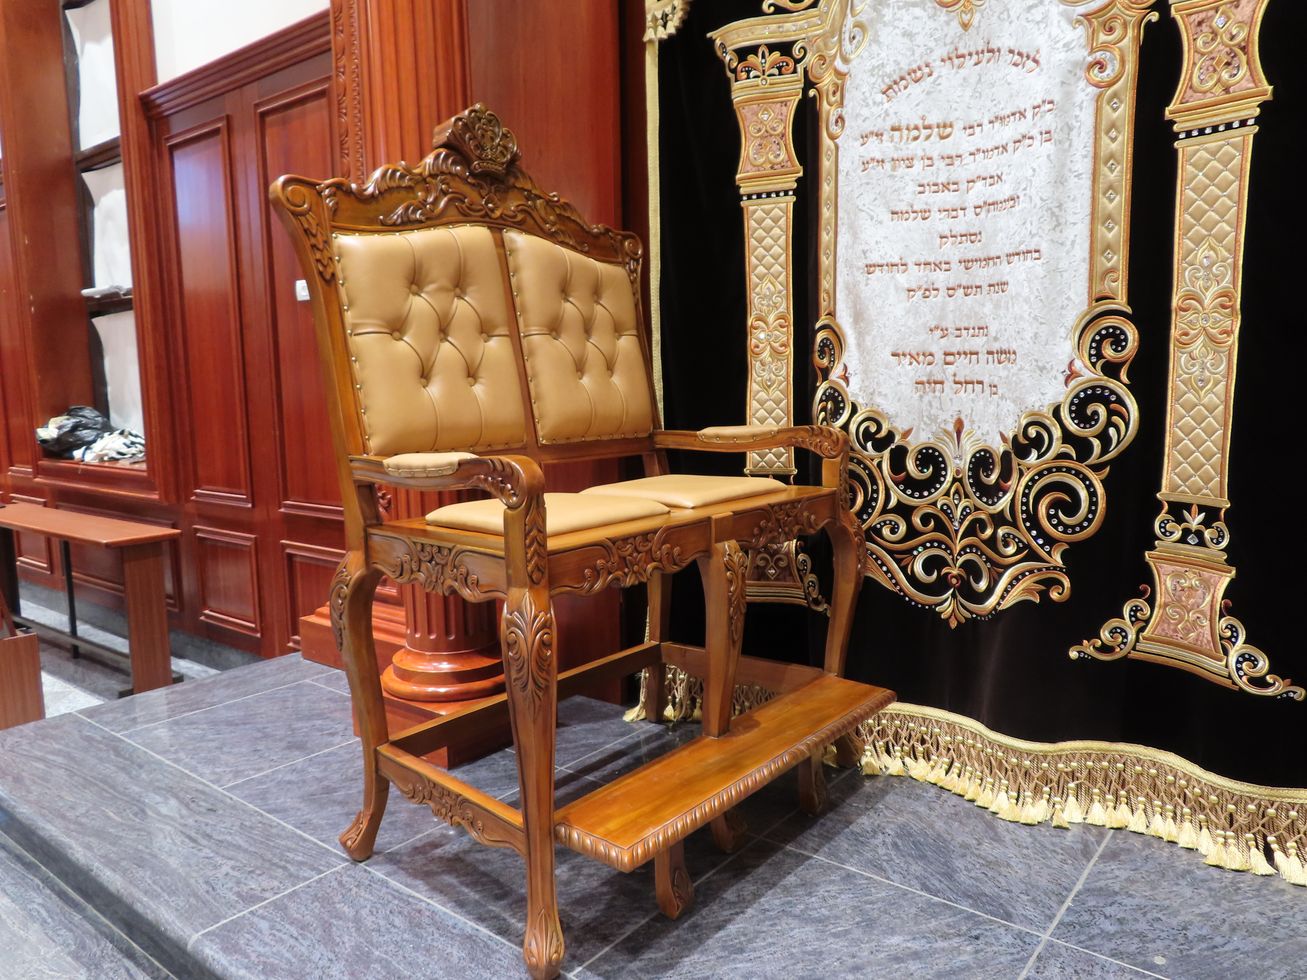 כיסא אליהו כפול בית כנסת נחלת יעקב ירושלים